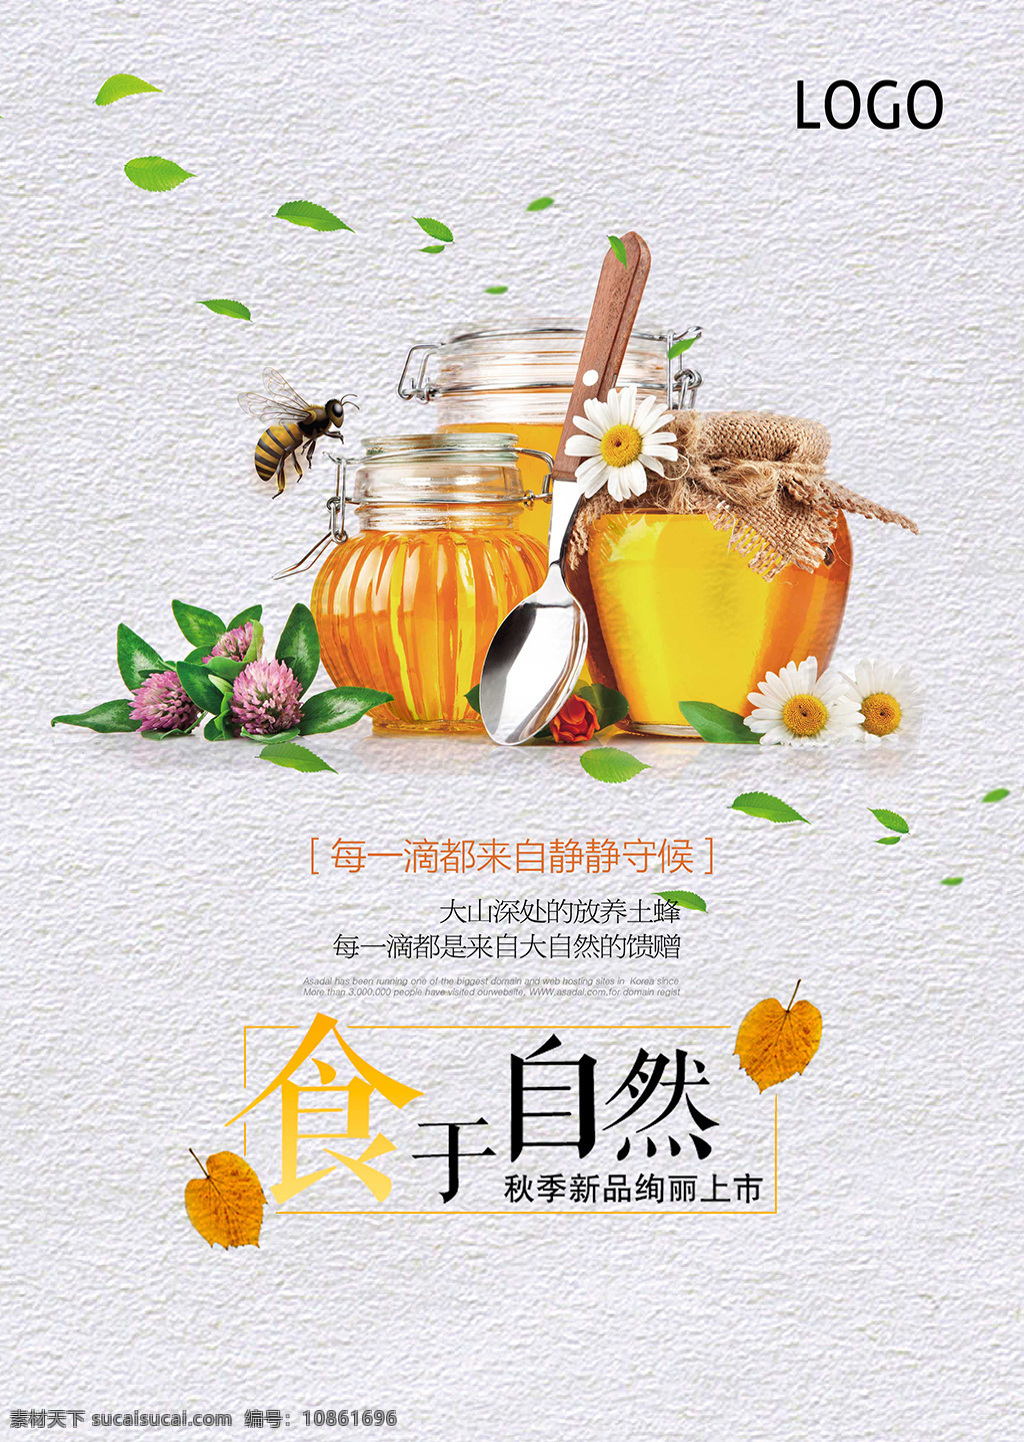 天然 蜂蜜 促销 海报 天然蜂蜜 进口蜂蜜 绿色 蜂蜜海报设计 纯天然蜂蜜 蜂蜜海报 蜂蜜展板 蜂蜜广告 蜂蜜模板 蜂蜜文化 蜂蜜图片 蜂蜜设计 蜂蜜产品